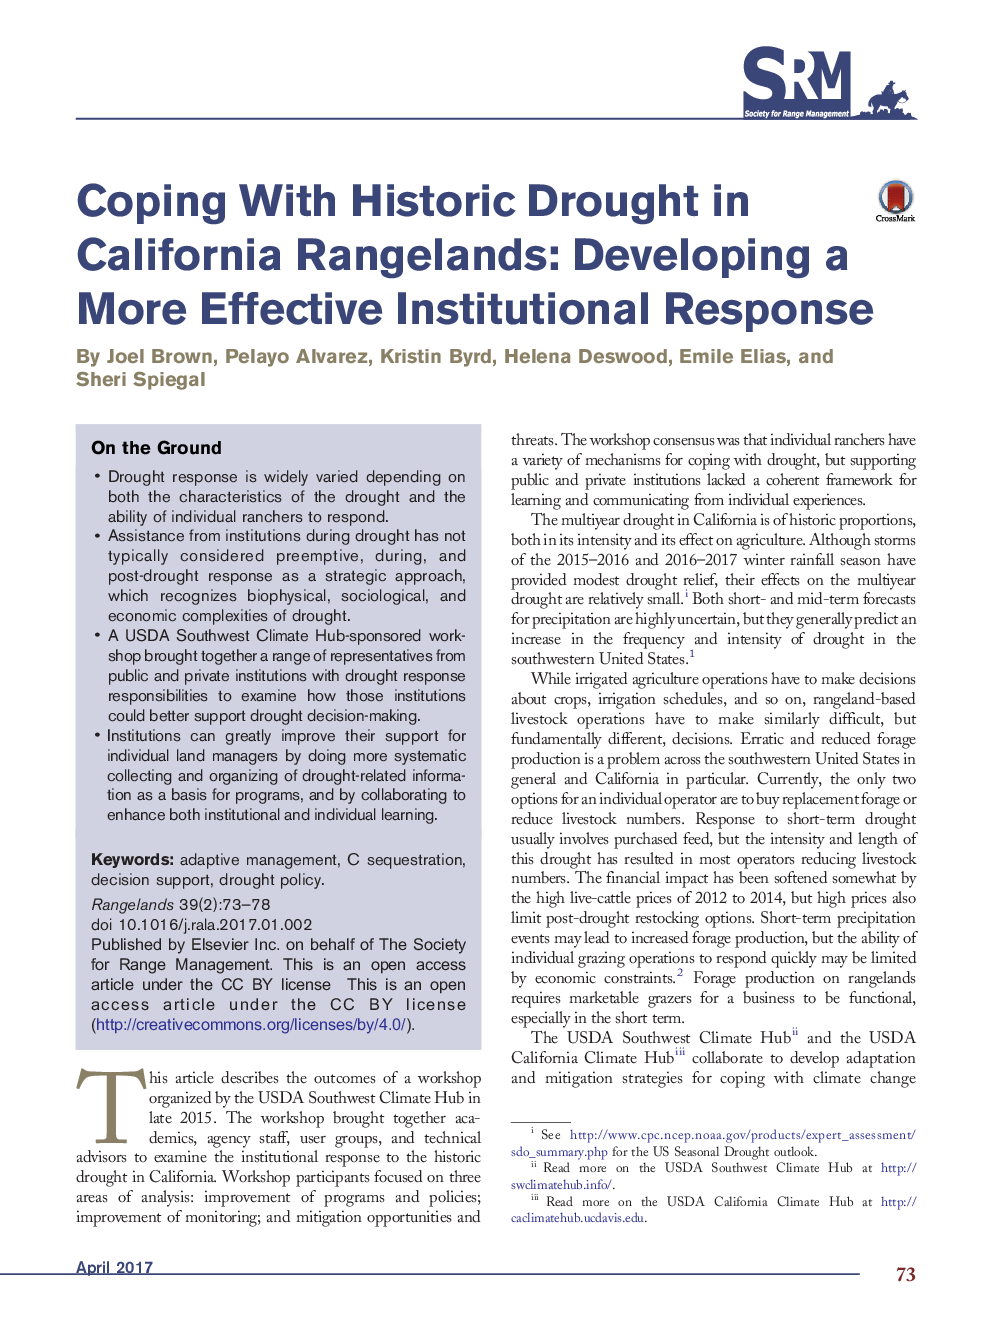 تحقیقات اصلی با خشکسالی تاریخی در مراتع کالیفرنیا: ایجاد یک پاسخ سازمانی موثرتر 